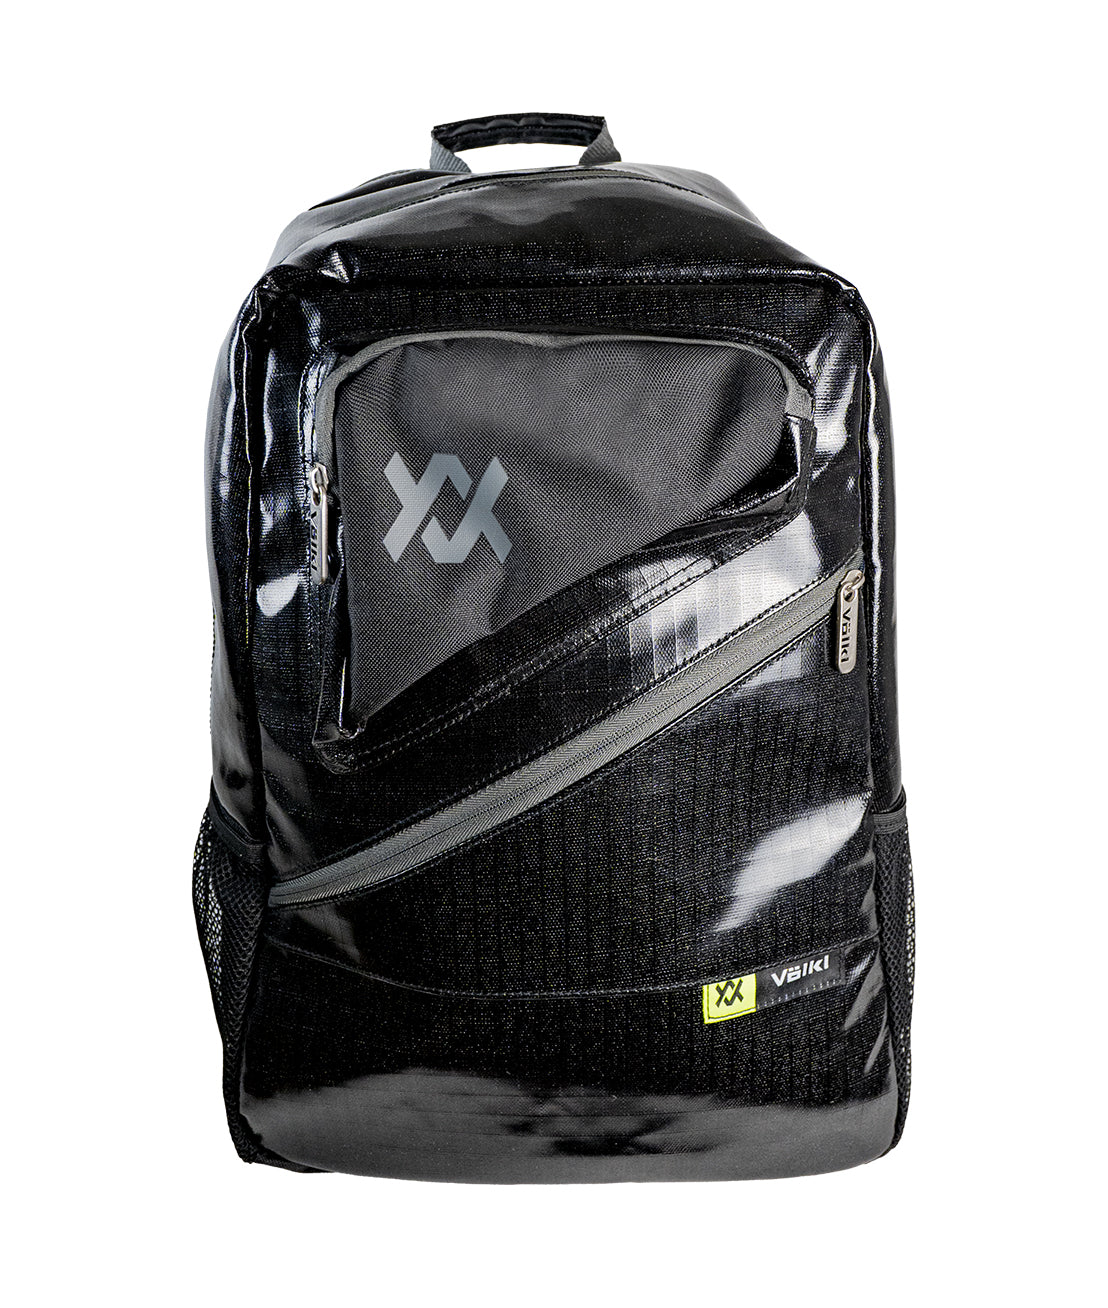 PRIMO Backpack (Backordered Unit 6/15)